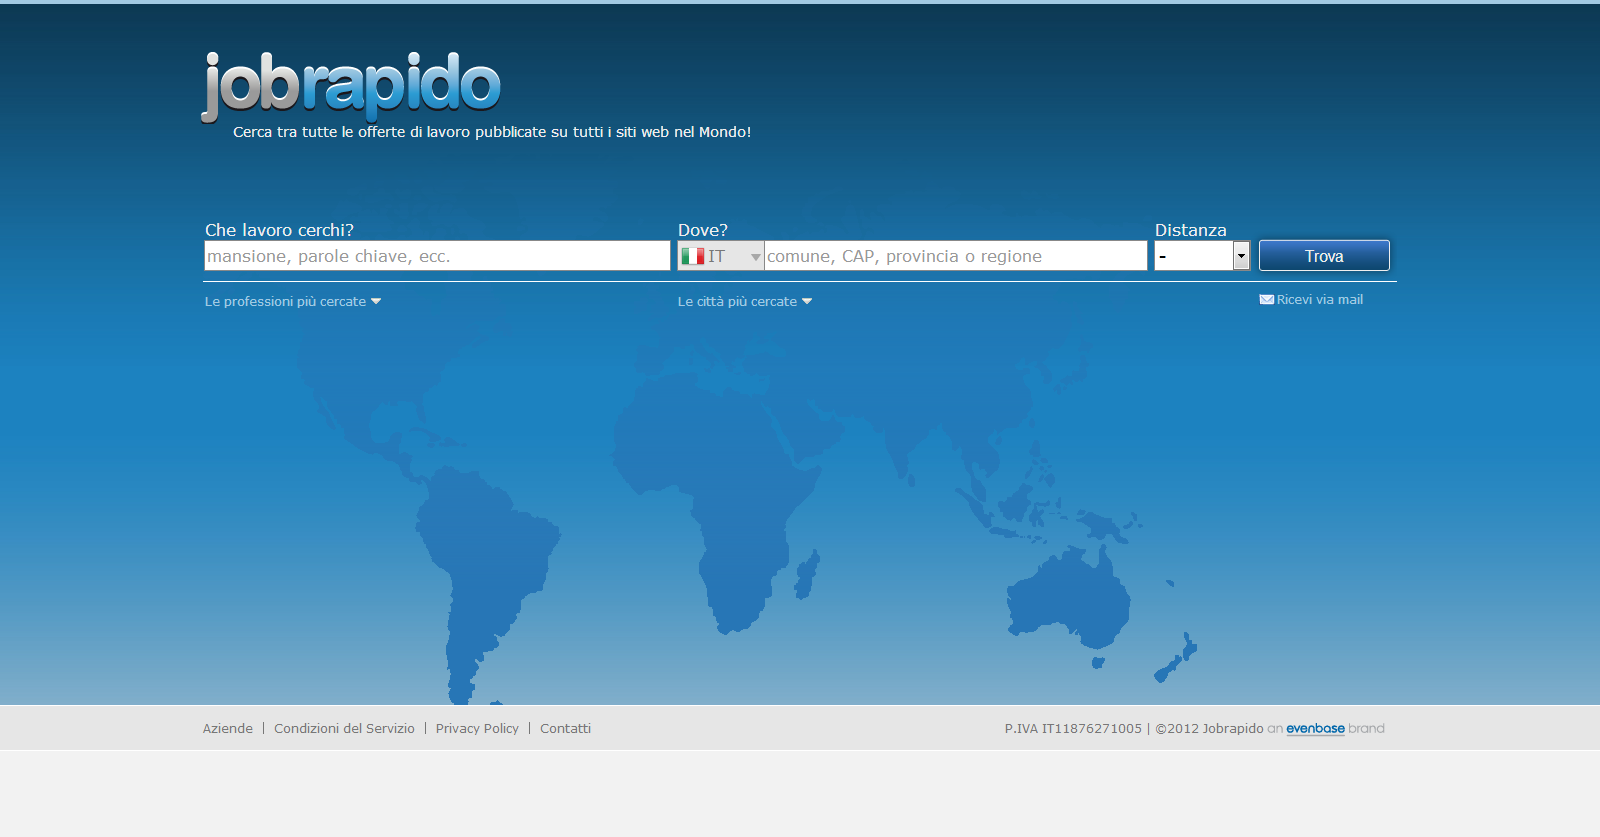 Schermata principale del portale jobrapido.com